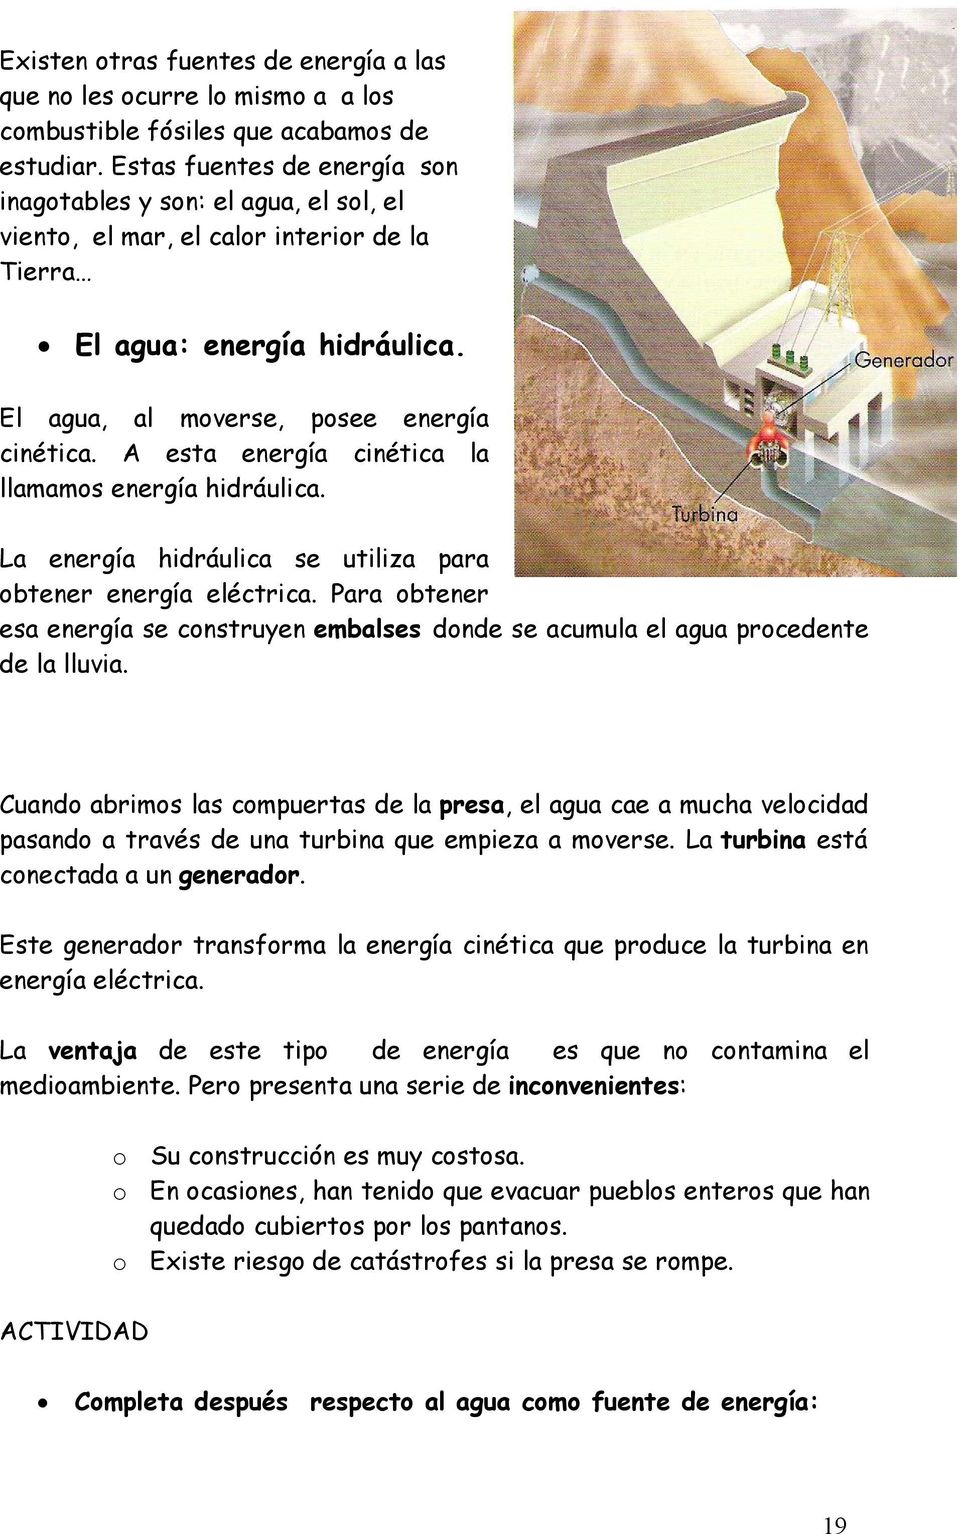 esta energía cinética la llamamos energía hidráulica. a energía hidráulica se utiliza para obtener energía eléctrica.